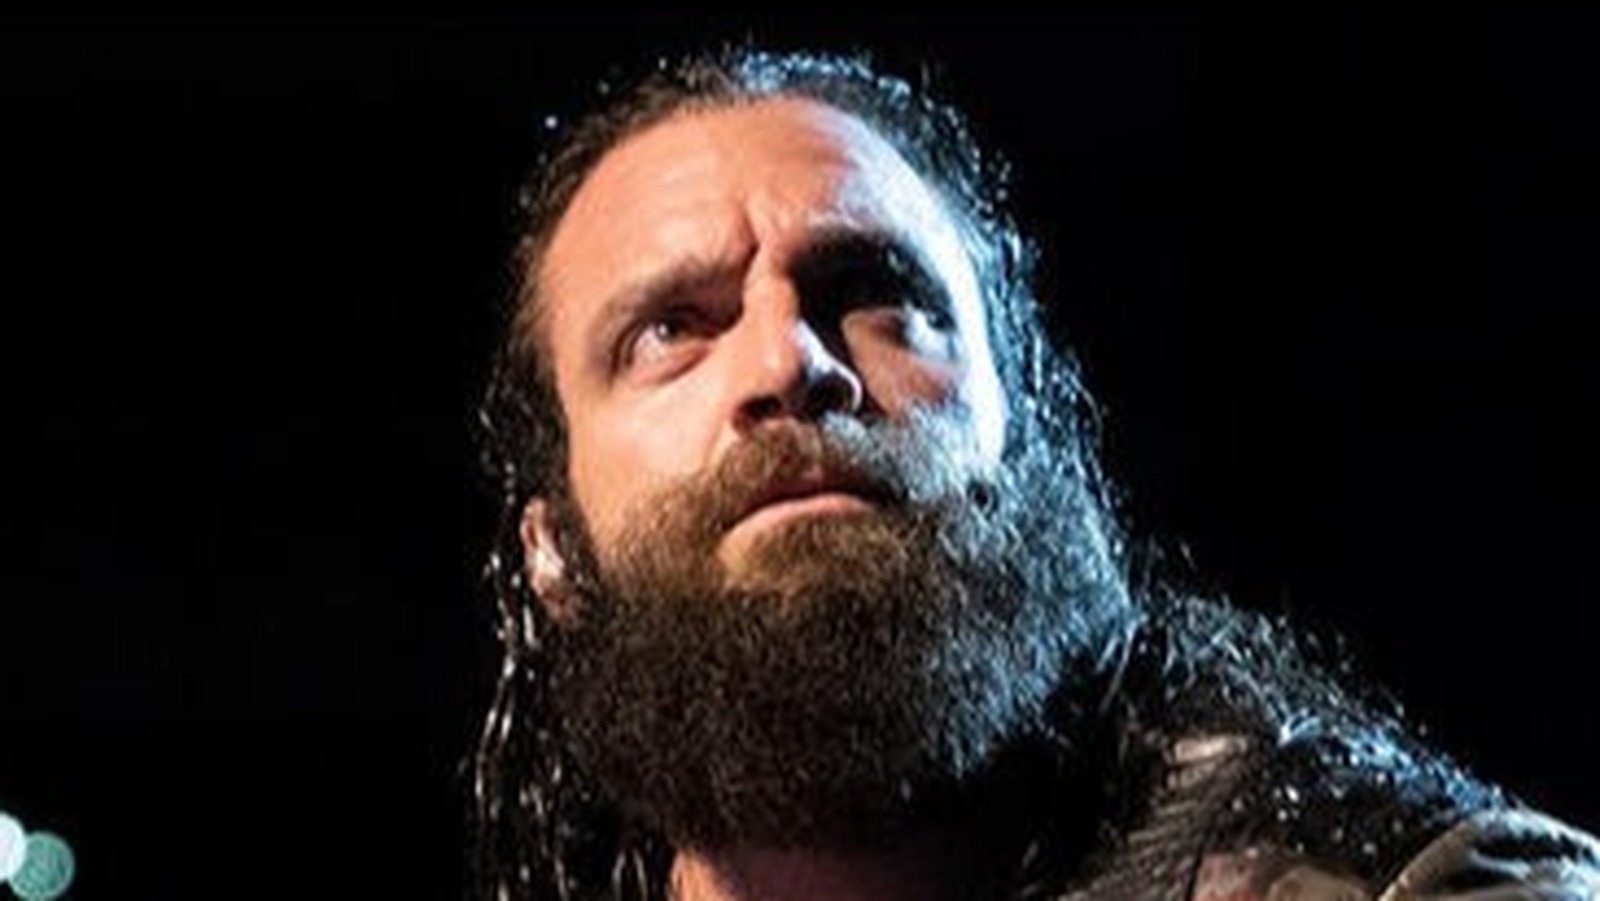 Wielka aktualizacja, kiedy Elias powróci do programowania WWE